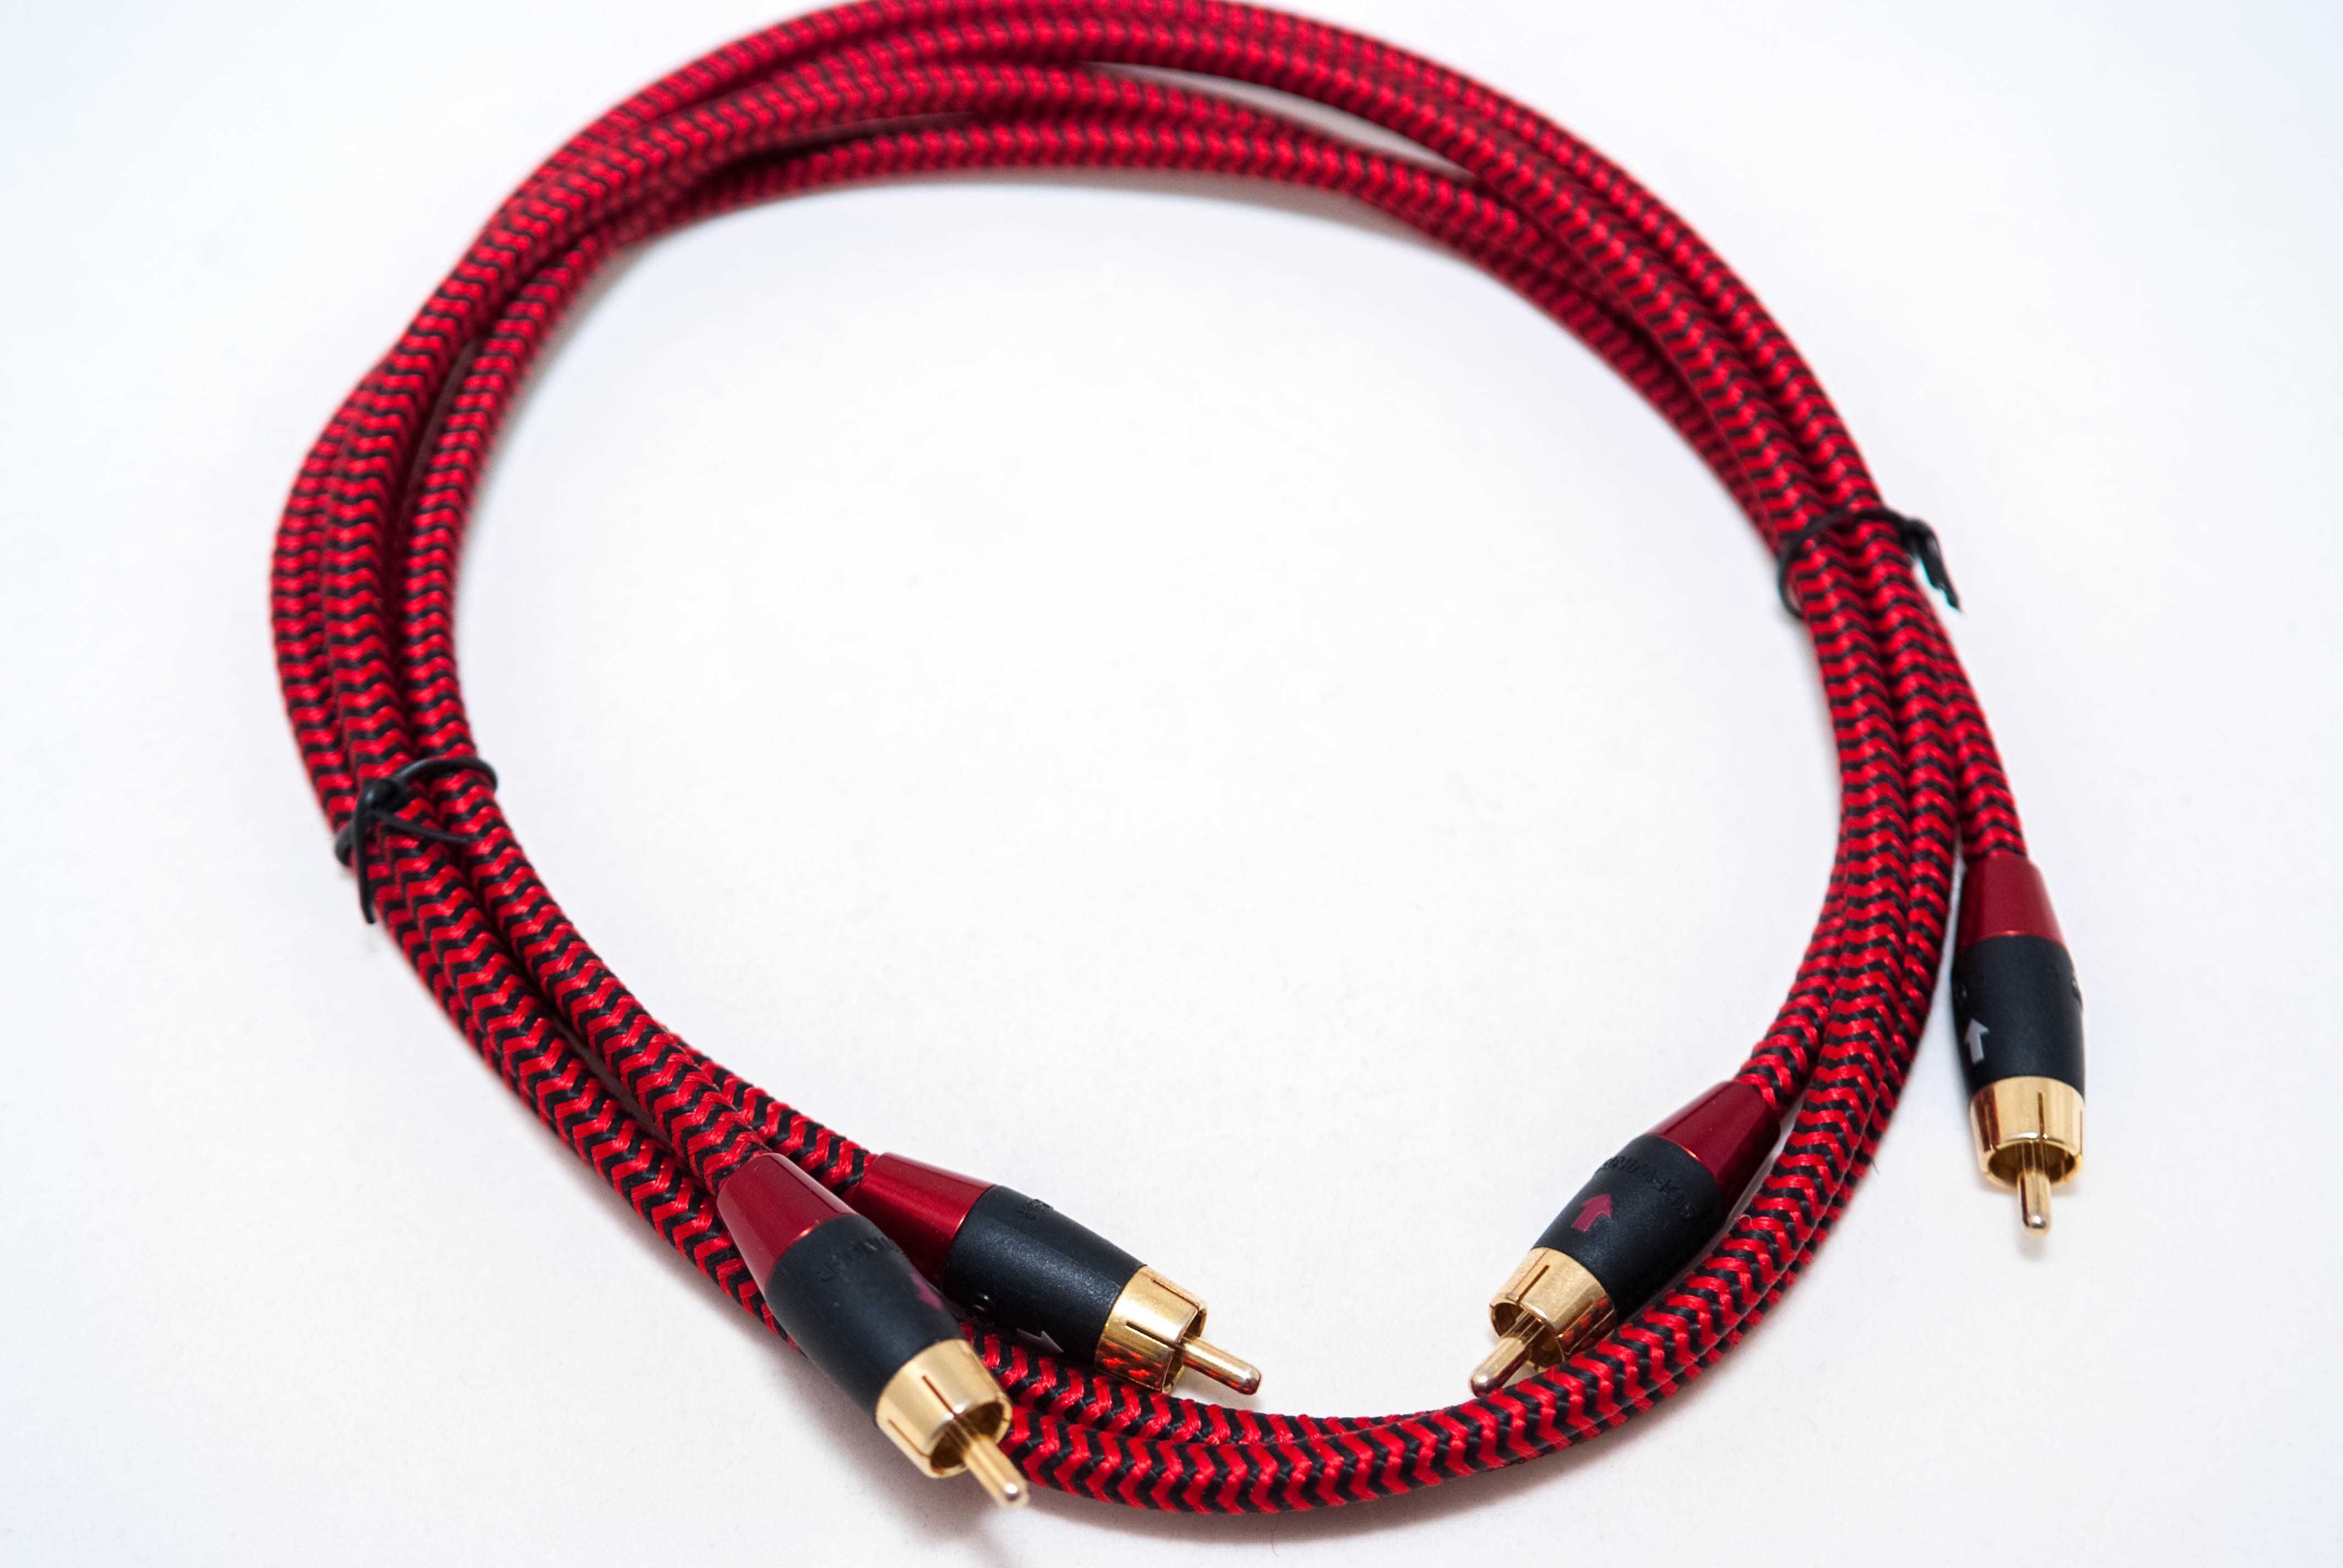 кабеля для наушников, плееров, цапов и акустики